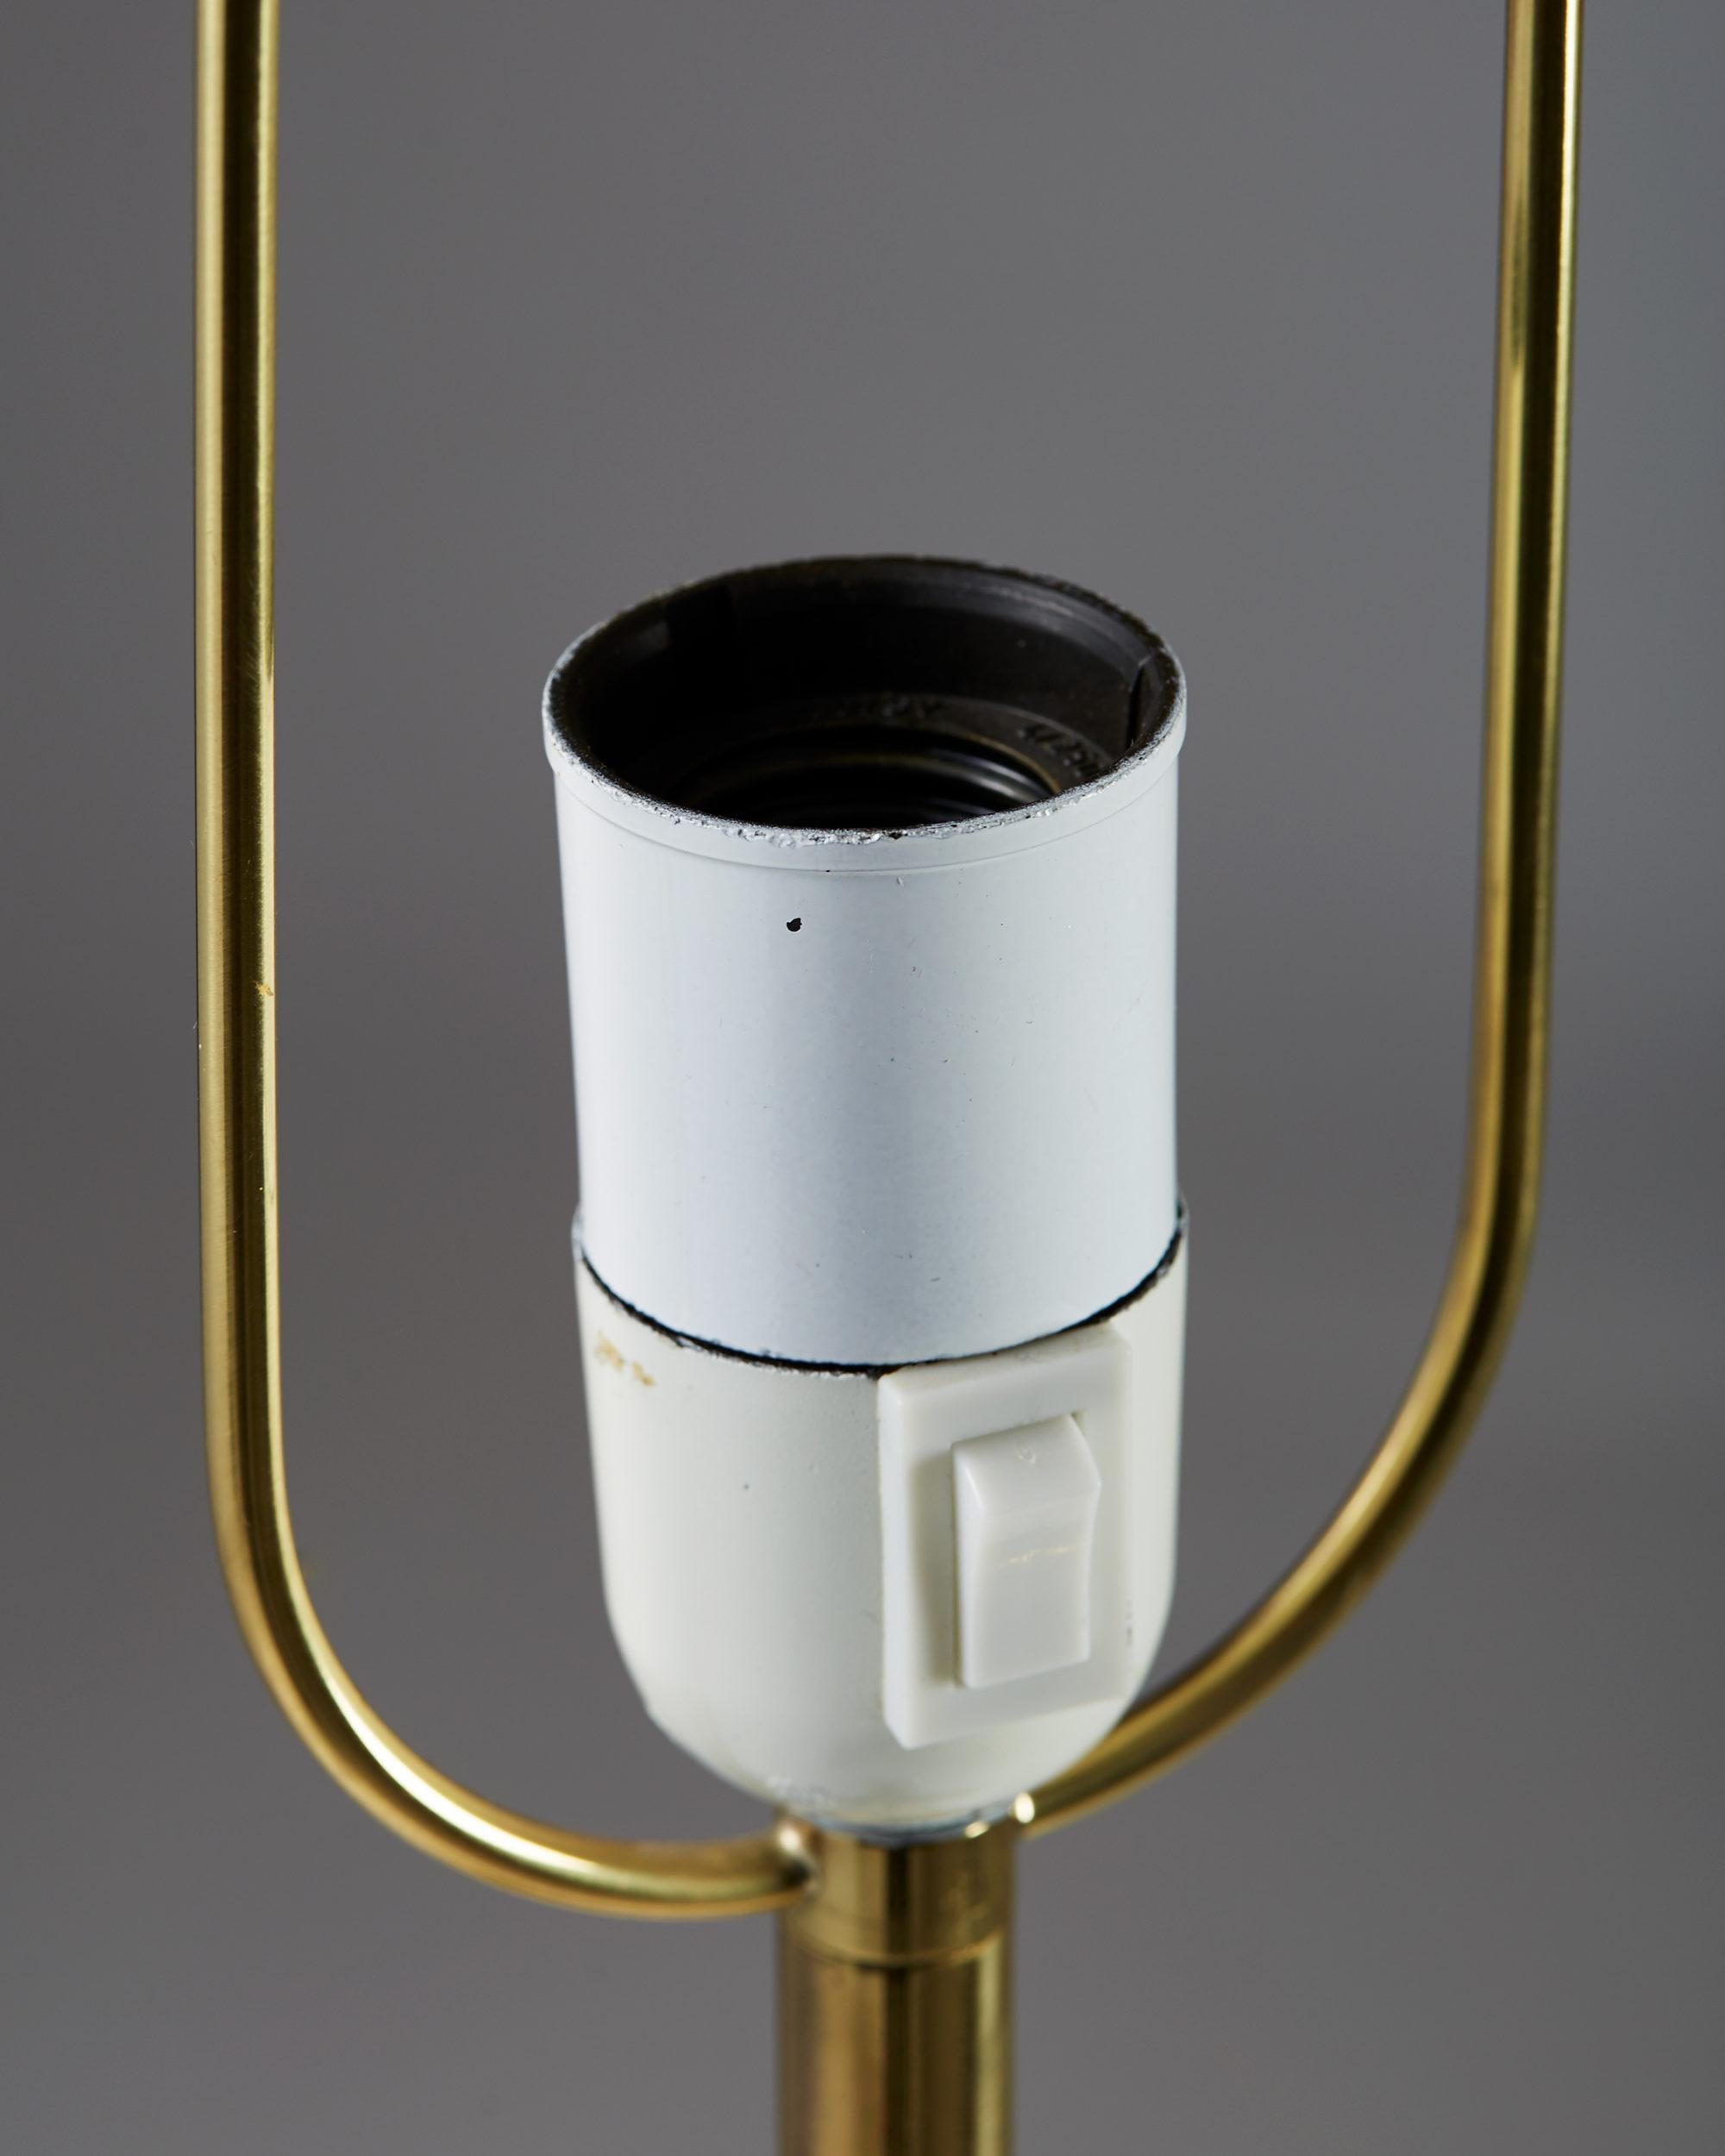 Mid-20th Century Table Lamp Model 2467/2 Designed by Josef Frank for Svenskt Tenn, Sweden, 1938